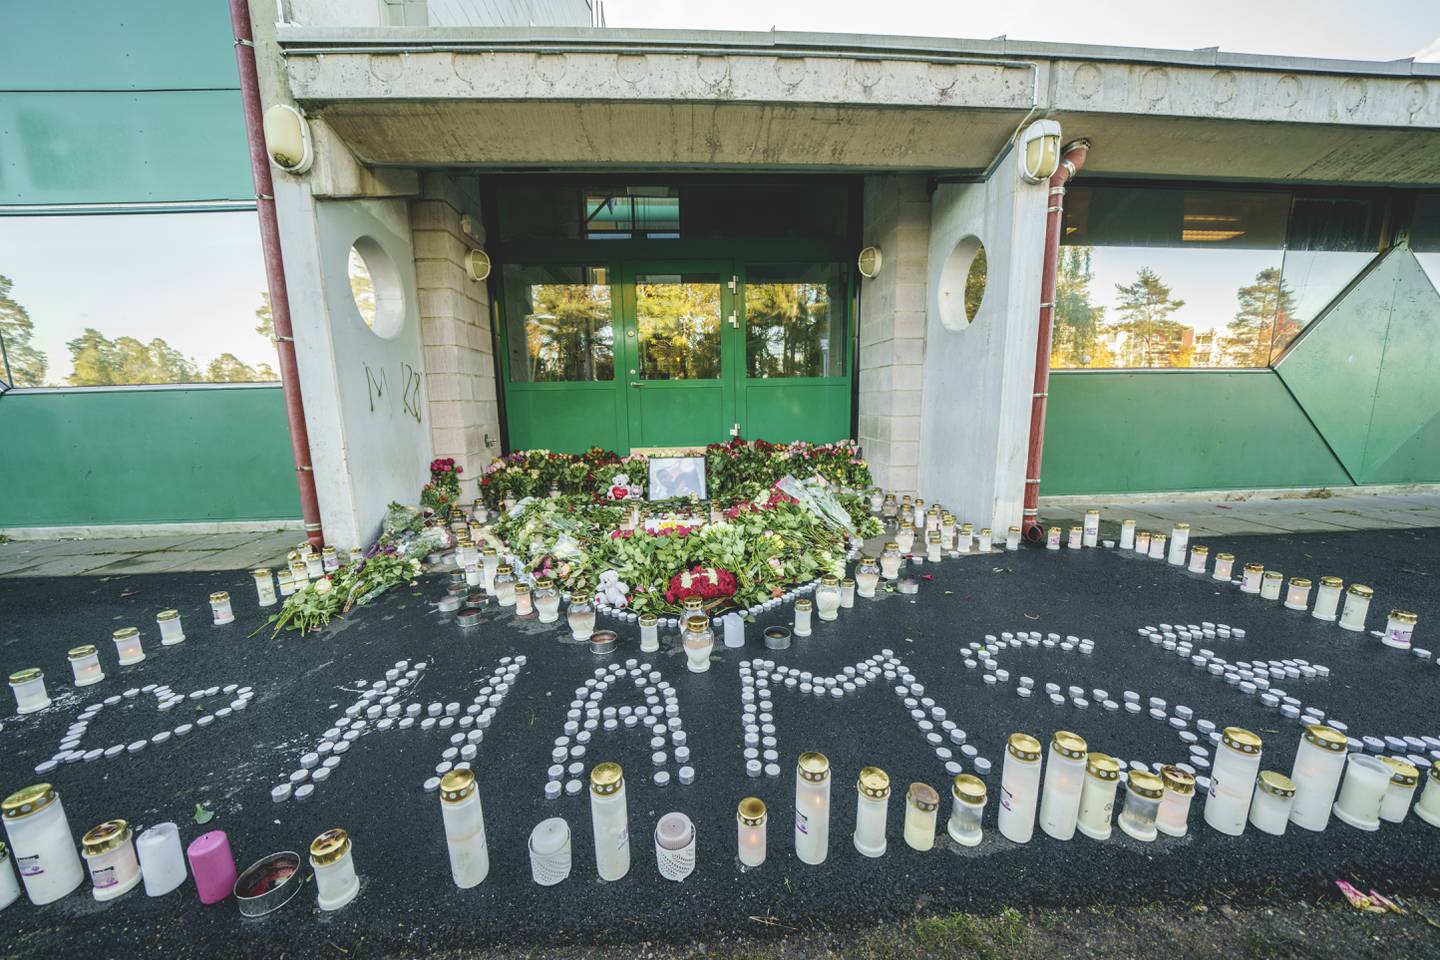 Blomster og lys utenfor Lofsrud skole på Mortensrud i Oslo etter at 20 år gamle Hamse Hashi Adan ble skutt og drept.